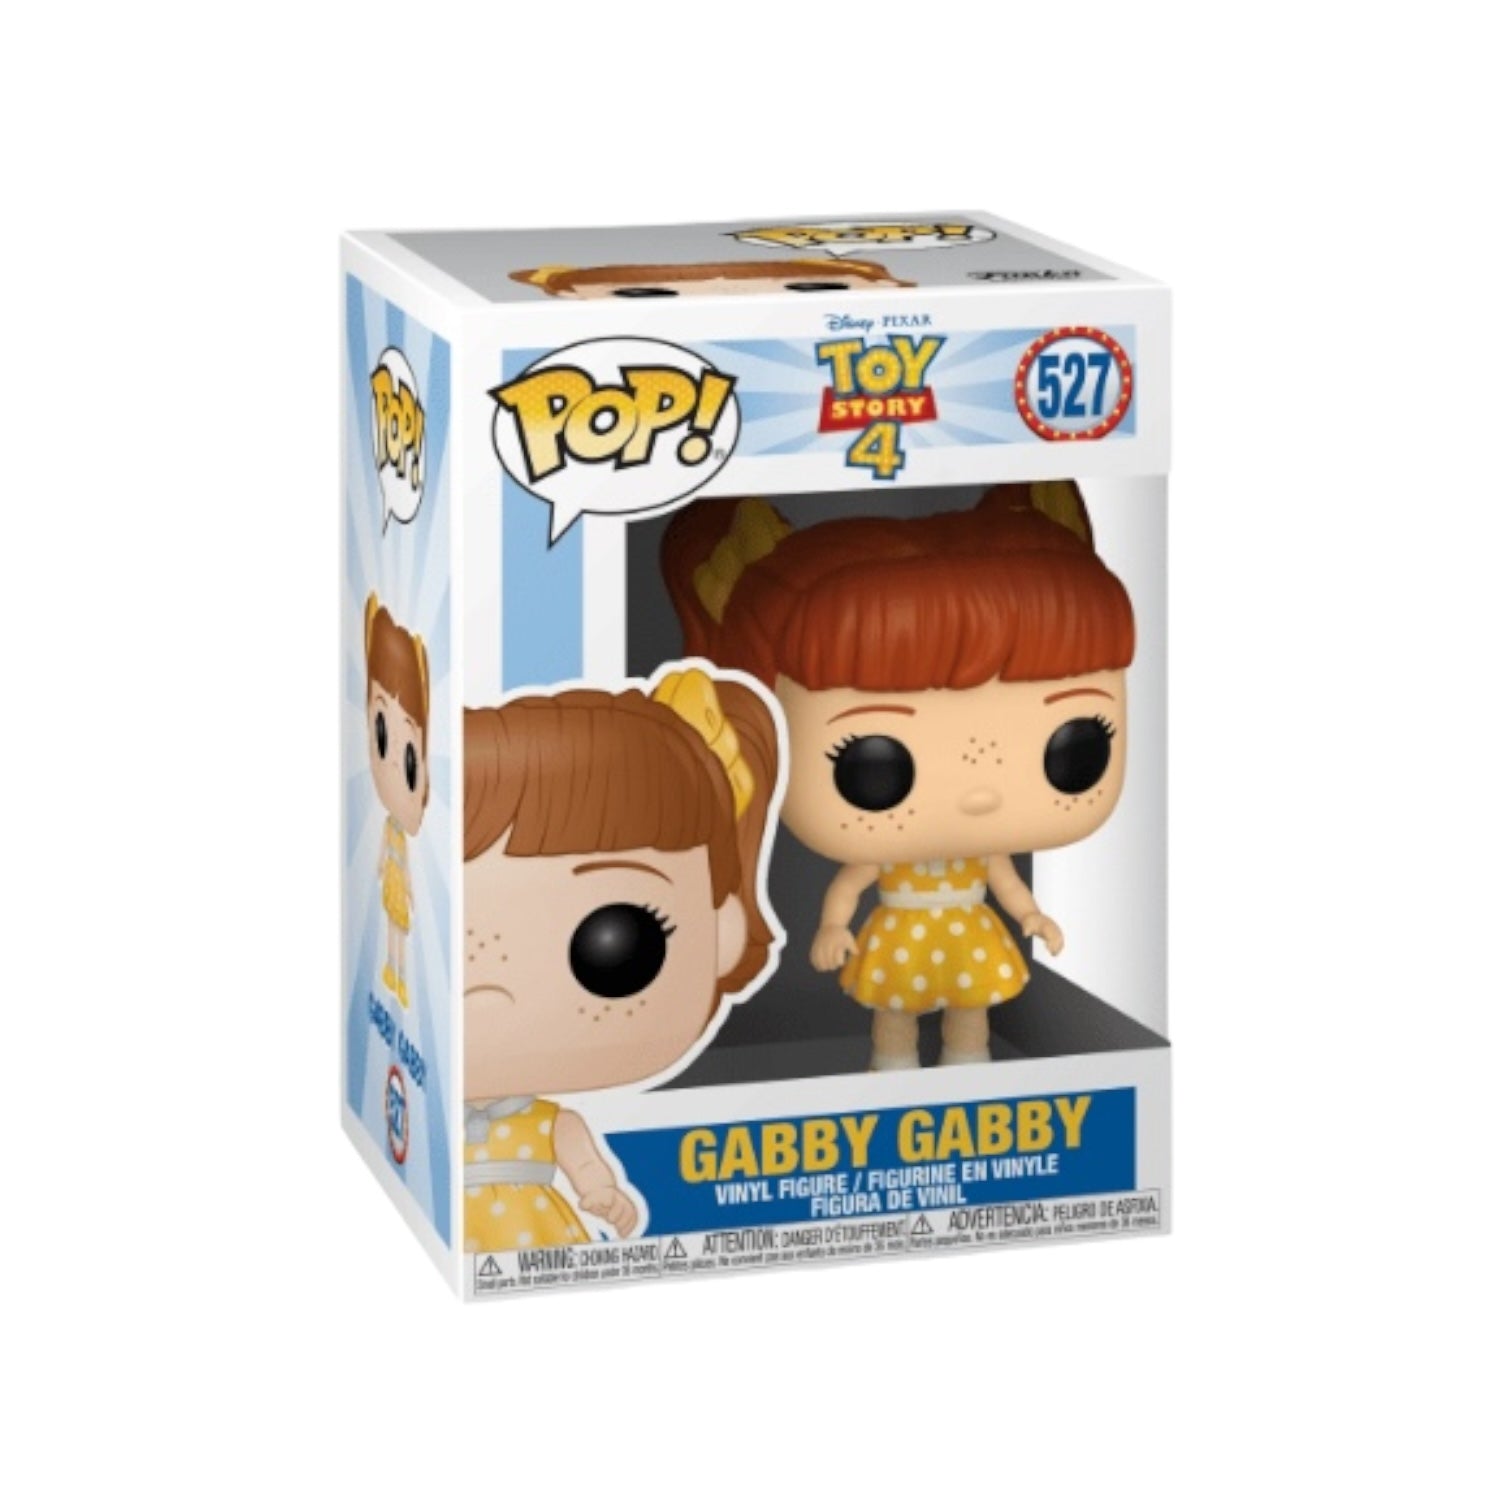 Gabby Gabby #527 Funko Pop! - Toy Story 4